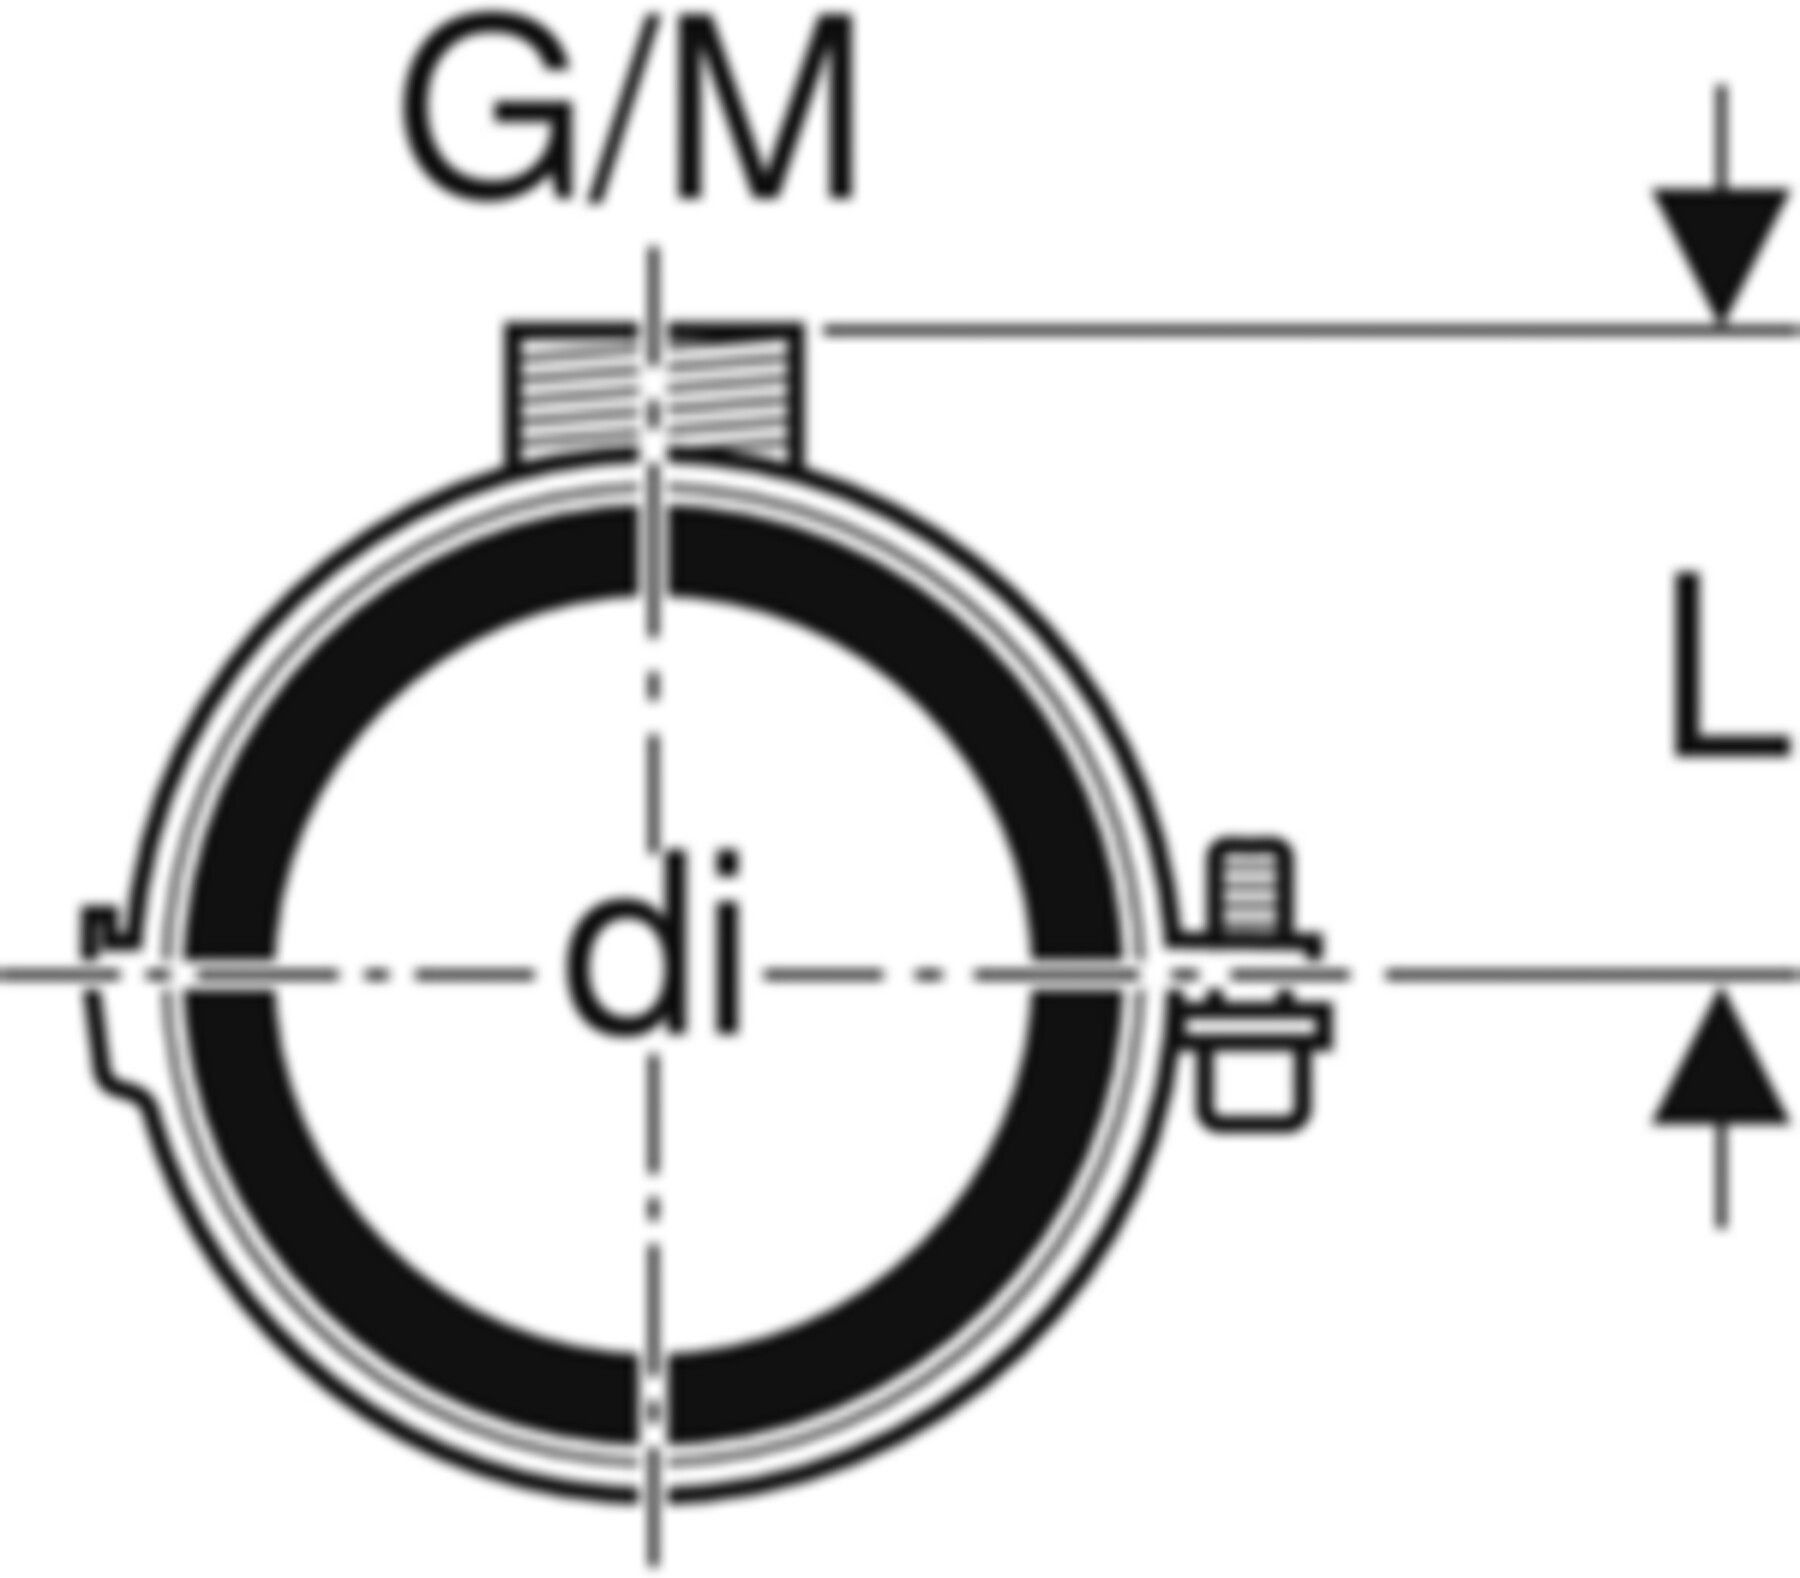 Rohrschelle mit Dämmeinlage d 135mm G/M 1/2"/M10 312.813.26.1 - Geberit-PE-Formstücke